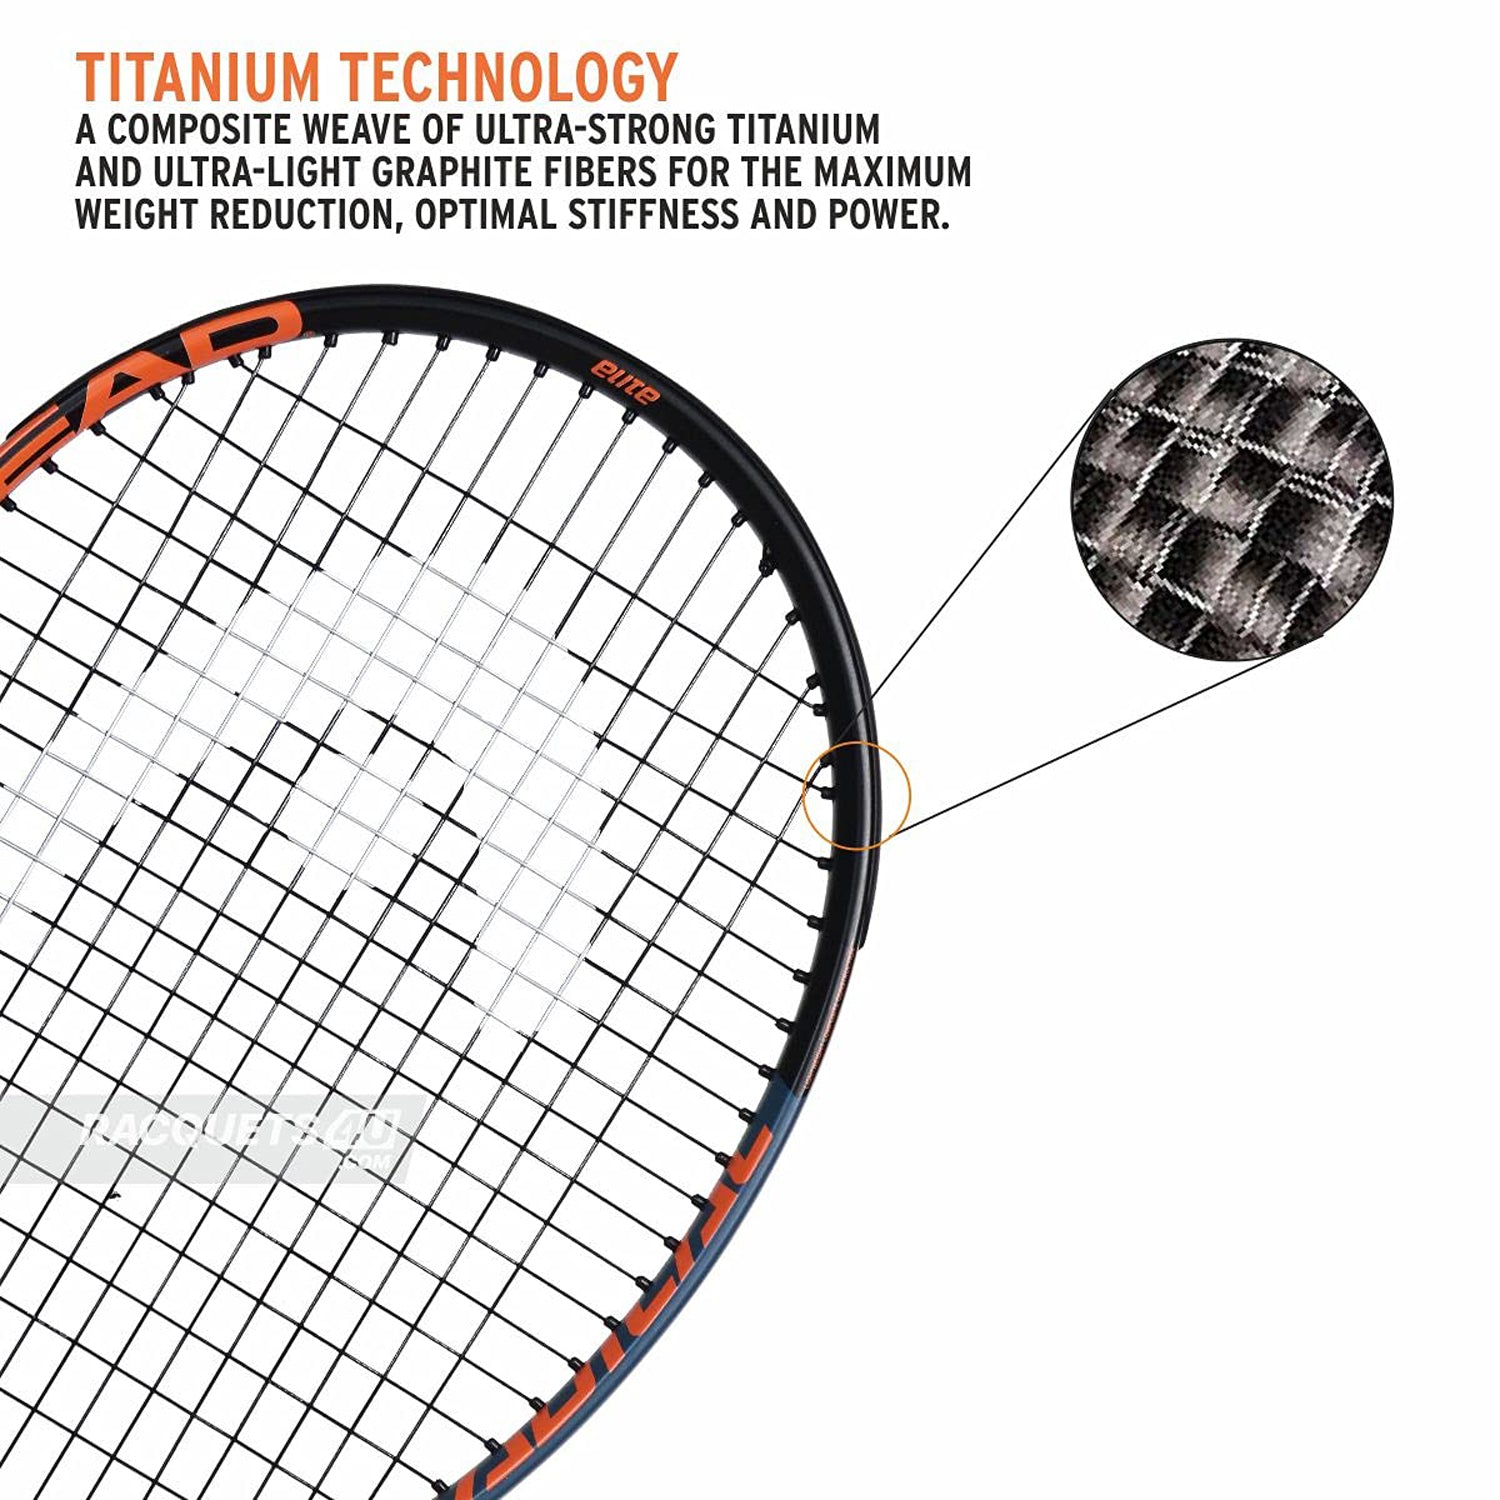 HEAD Radical Elite Graphite Strung Tennis Racquet ,4/3-8 - Best Price online Prokicksports.com